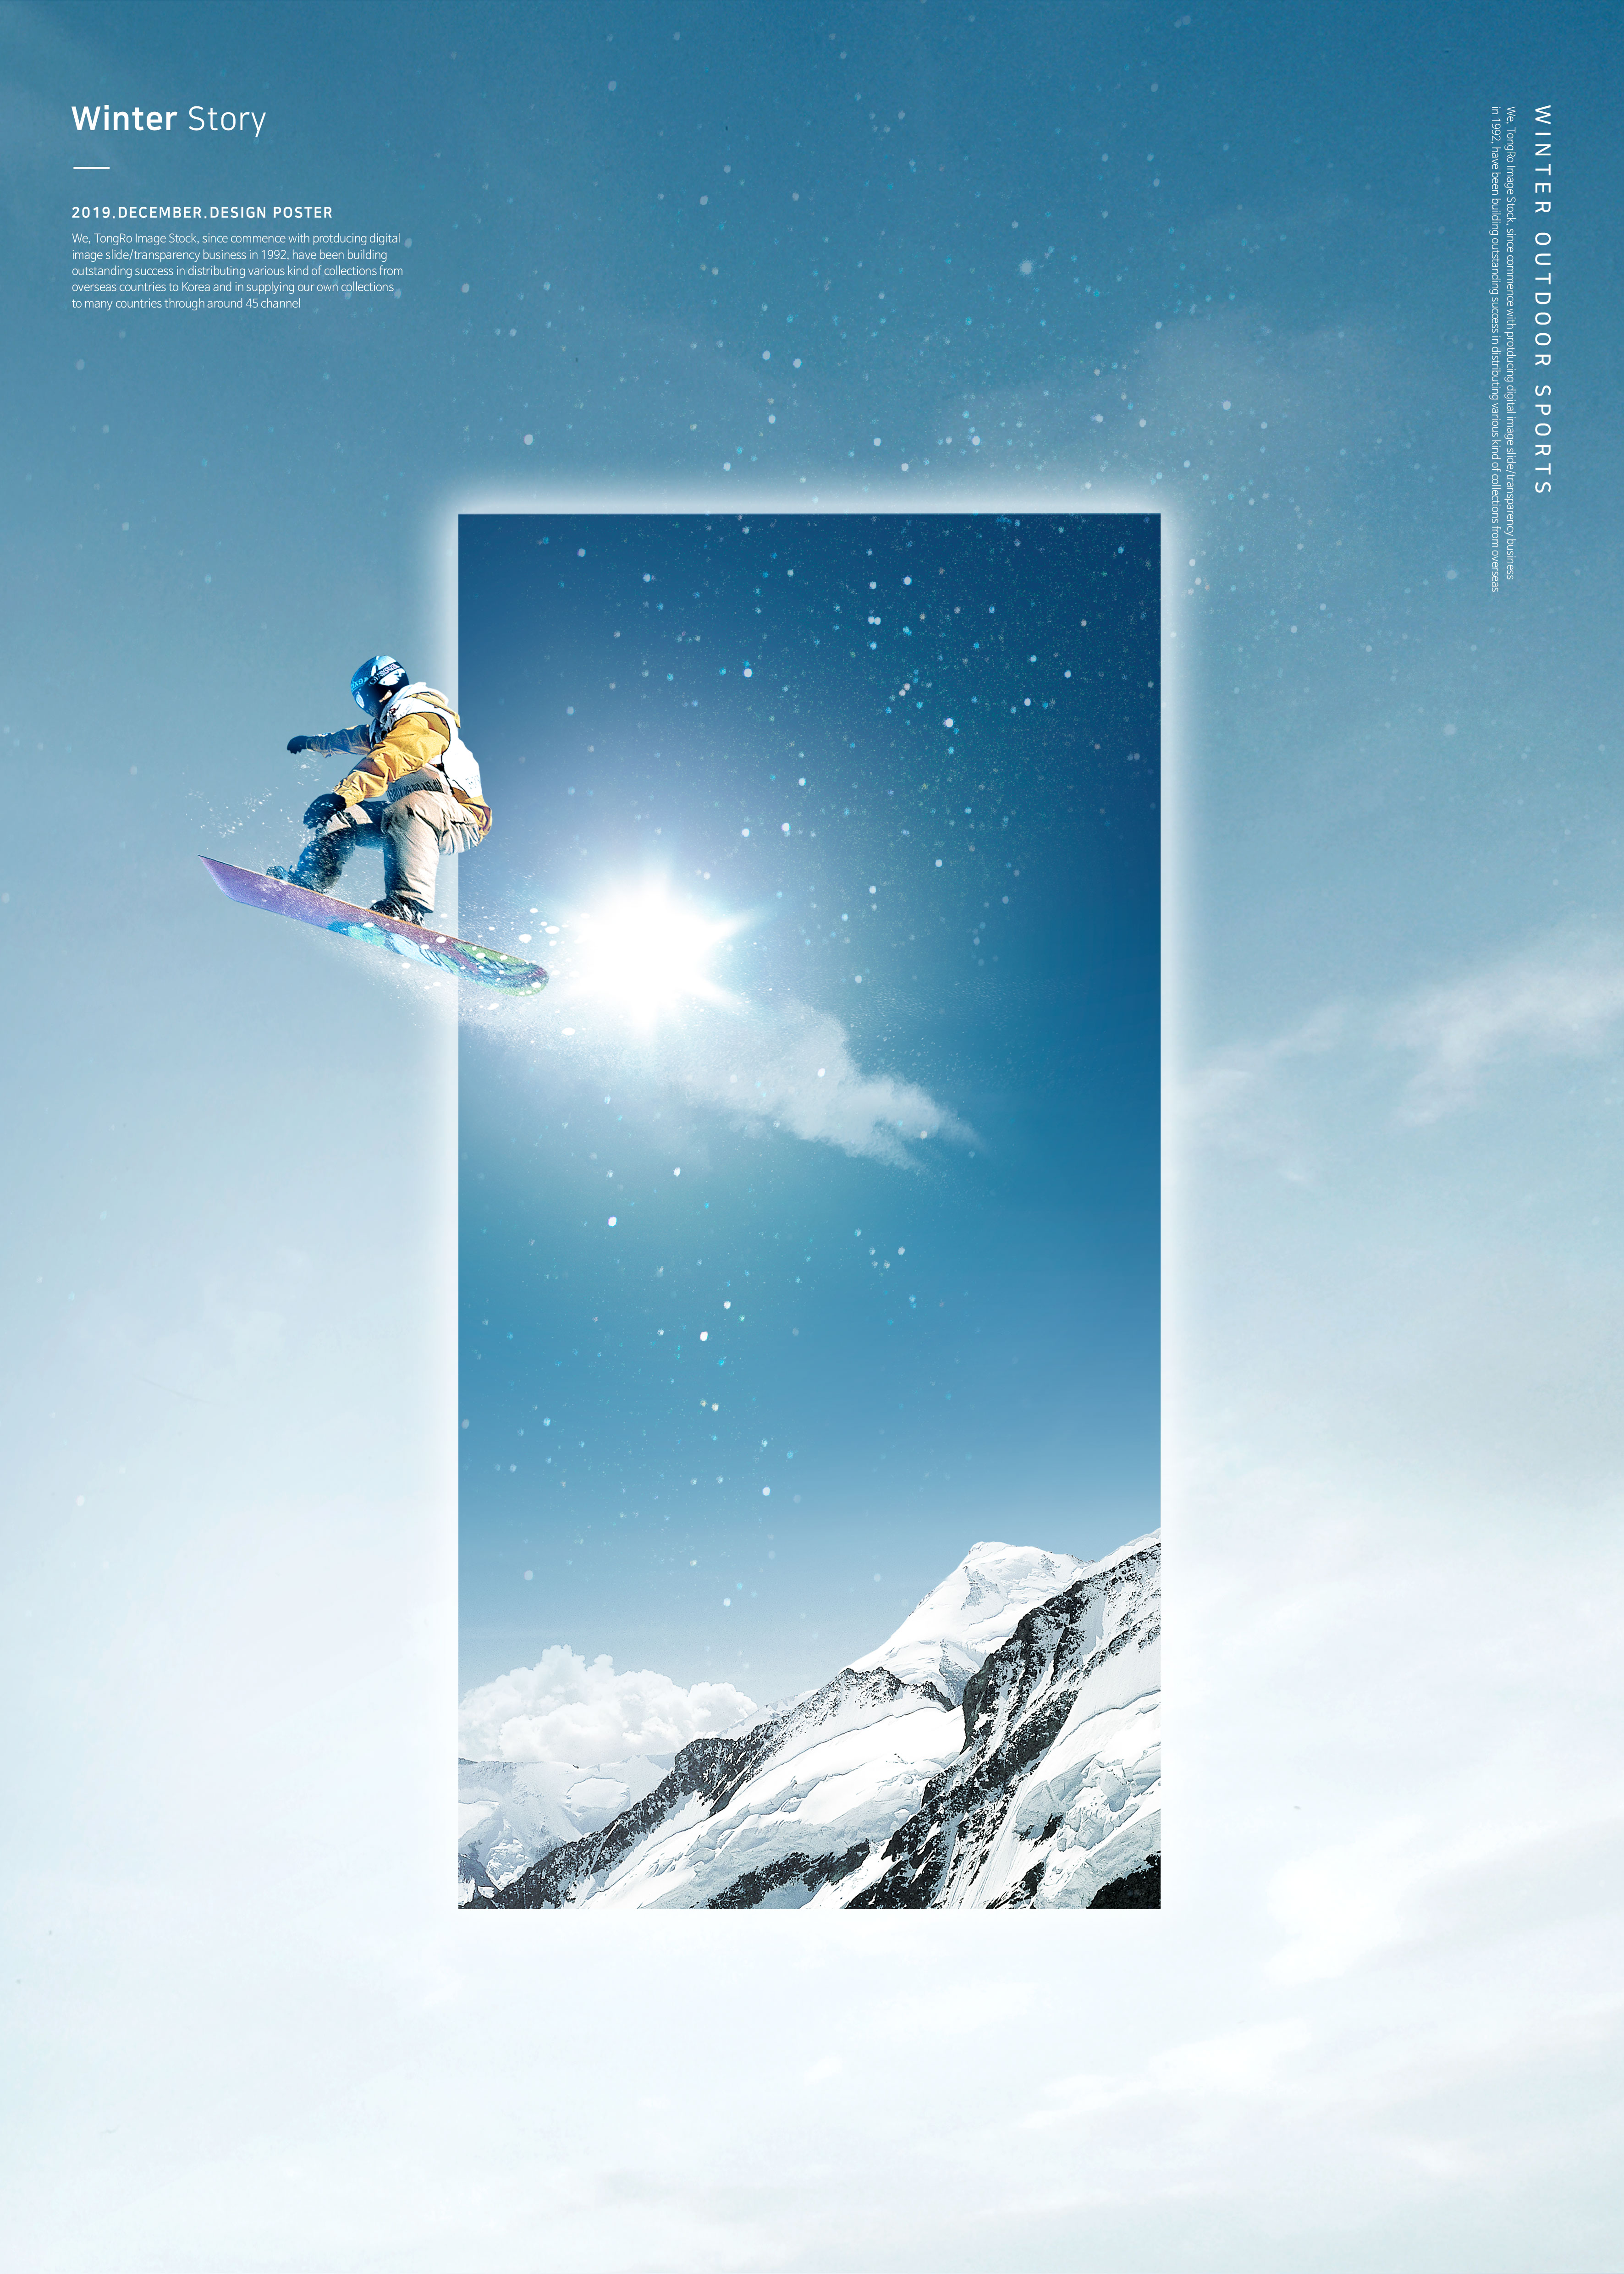 冬季雪山滑雪运动推广海报PSD素材素材库精选psd模板插图